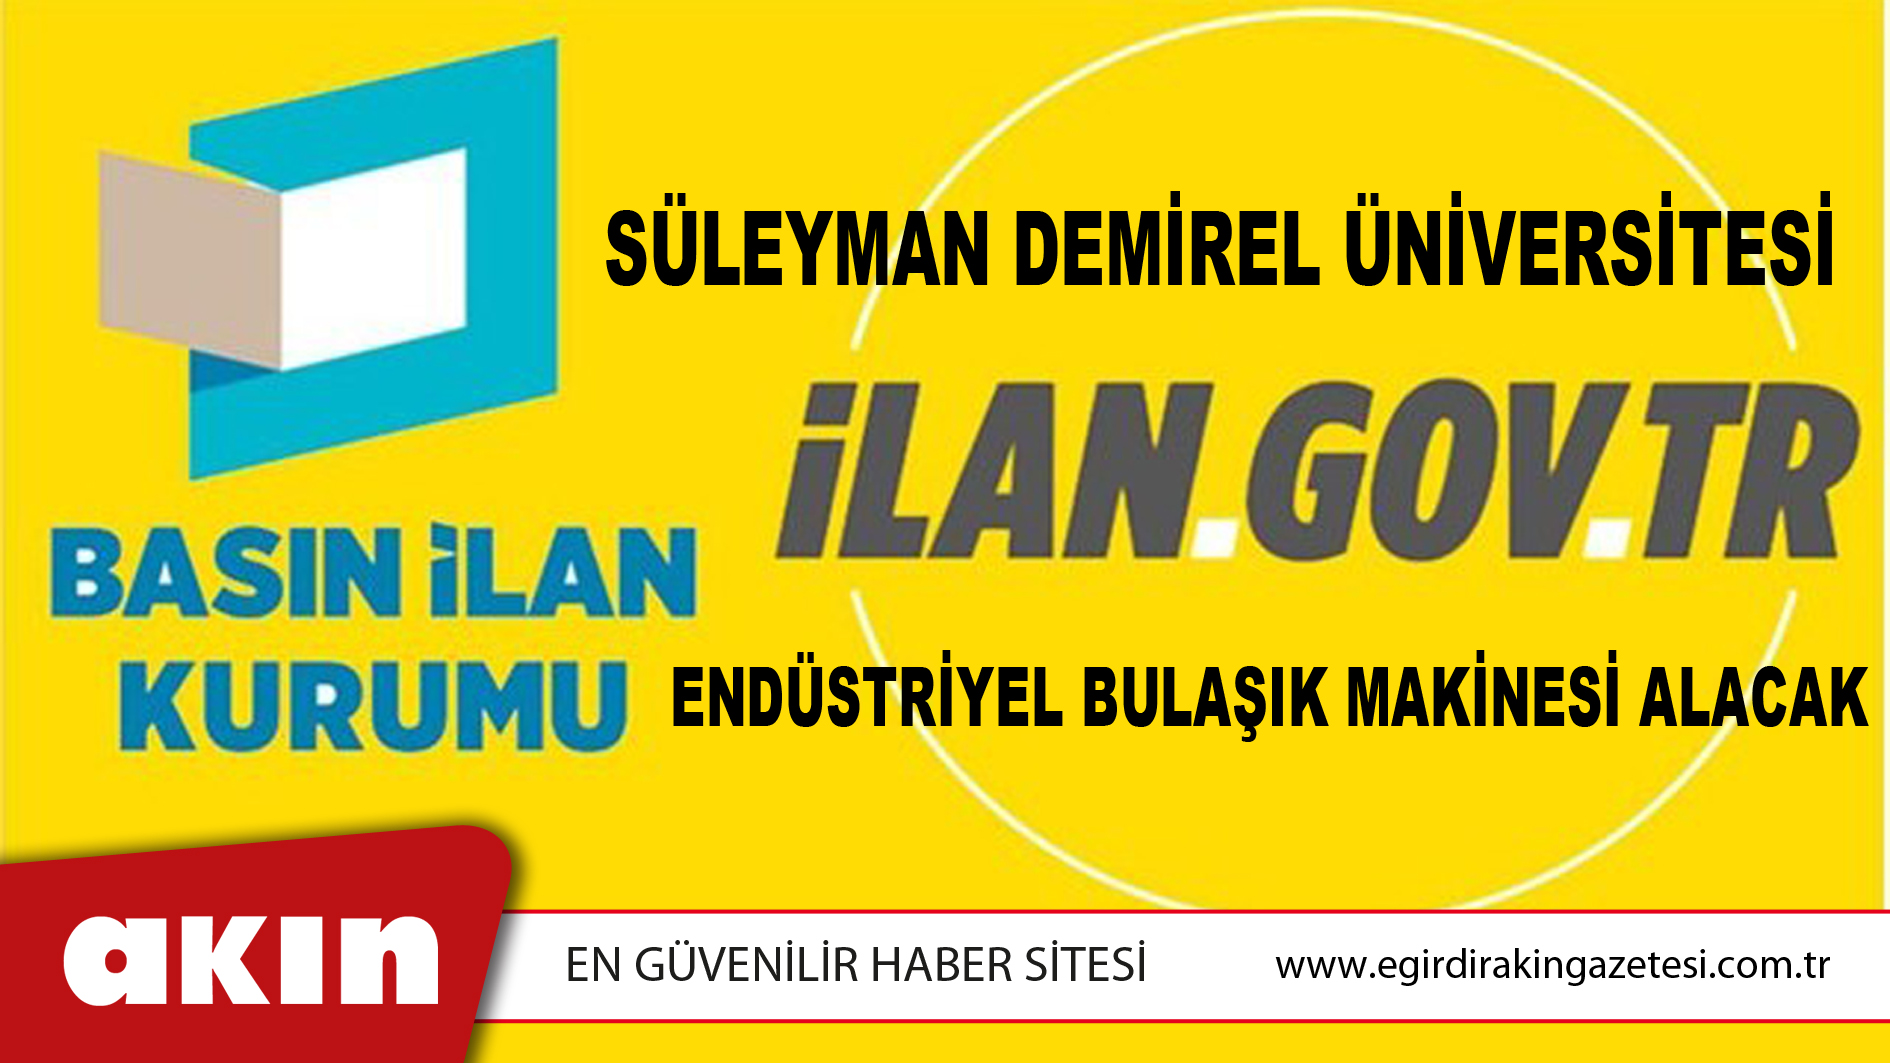 Süleyman Demirel Üniversitesi Endüstriyel Bulaşık Makinesi Alacak